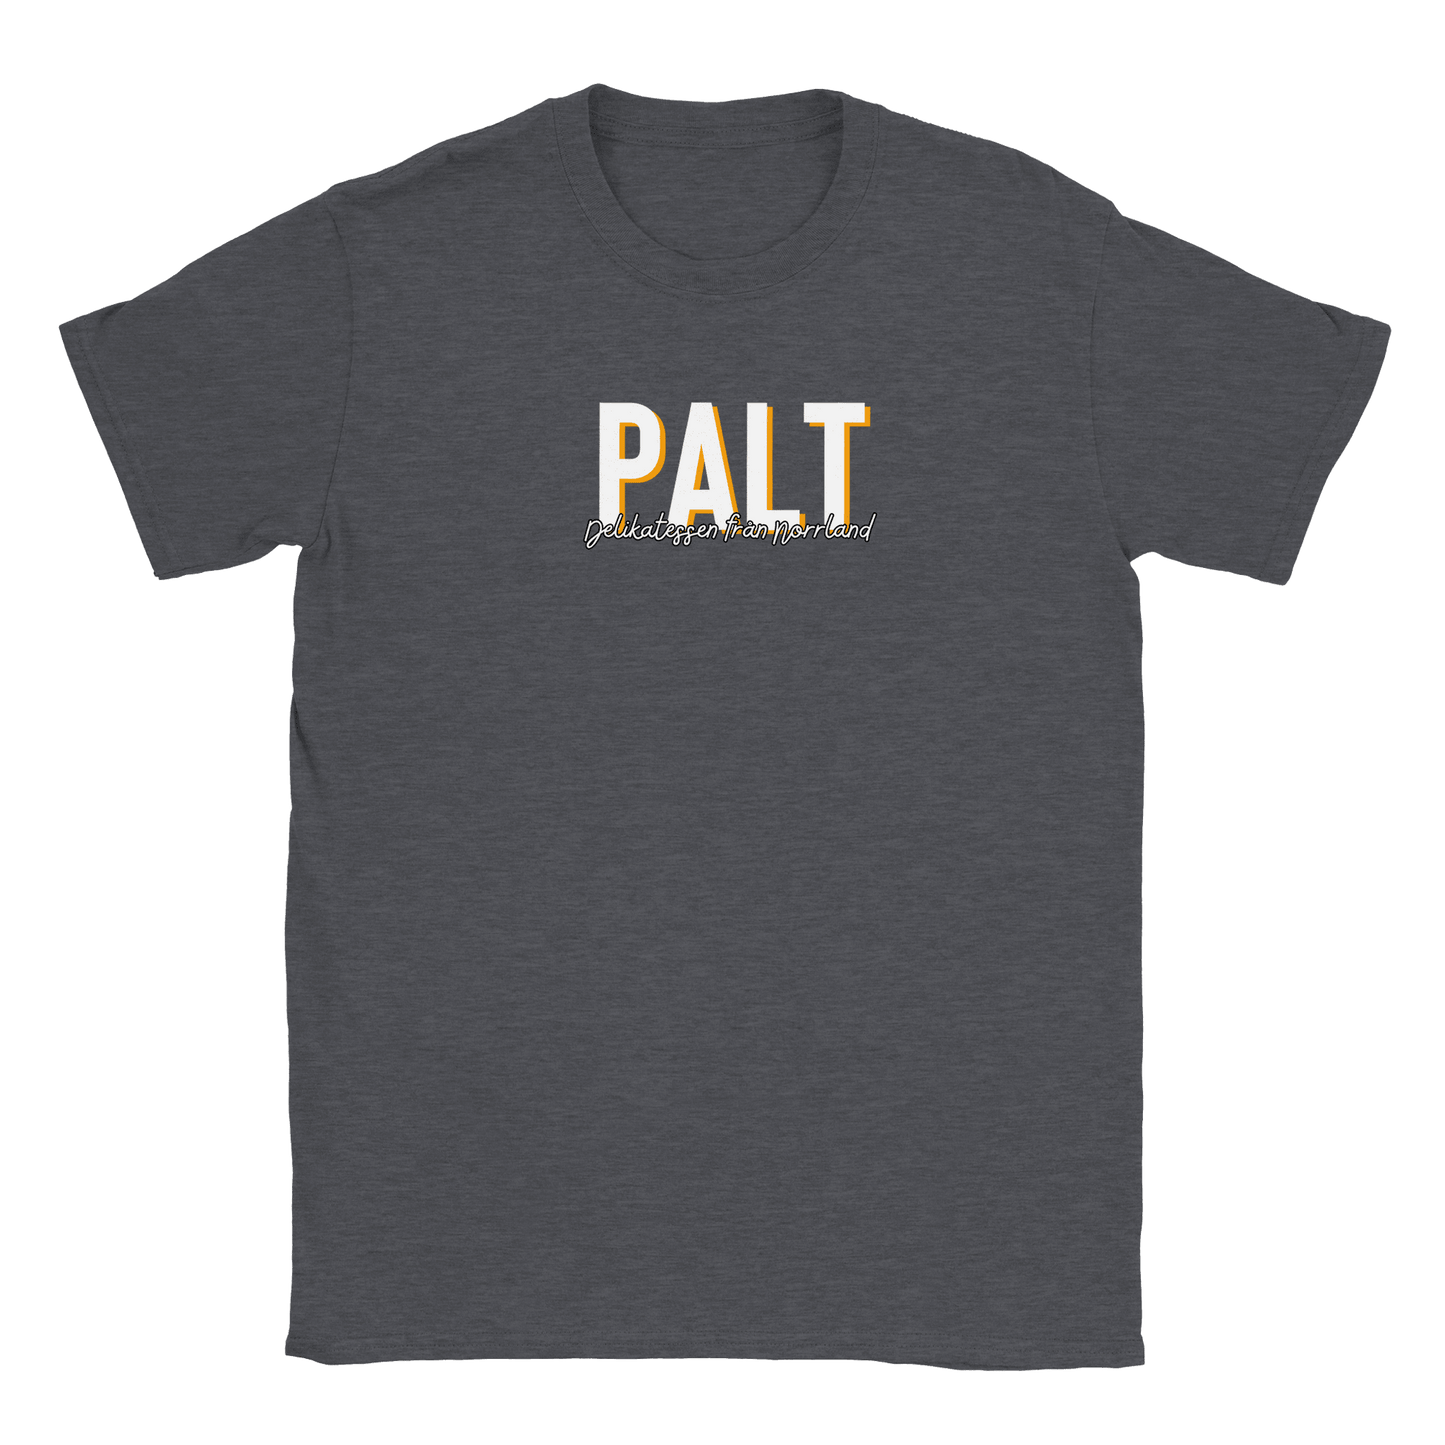 Palt - T-shirt Mörkgrå